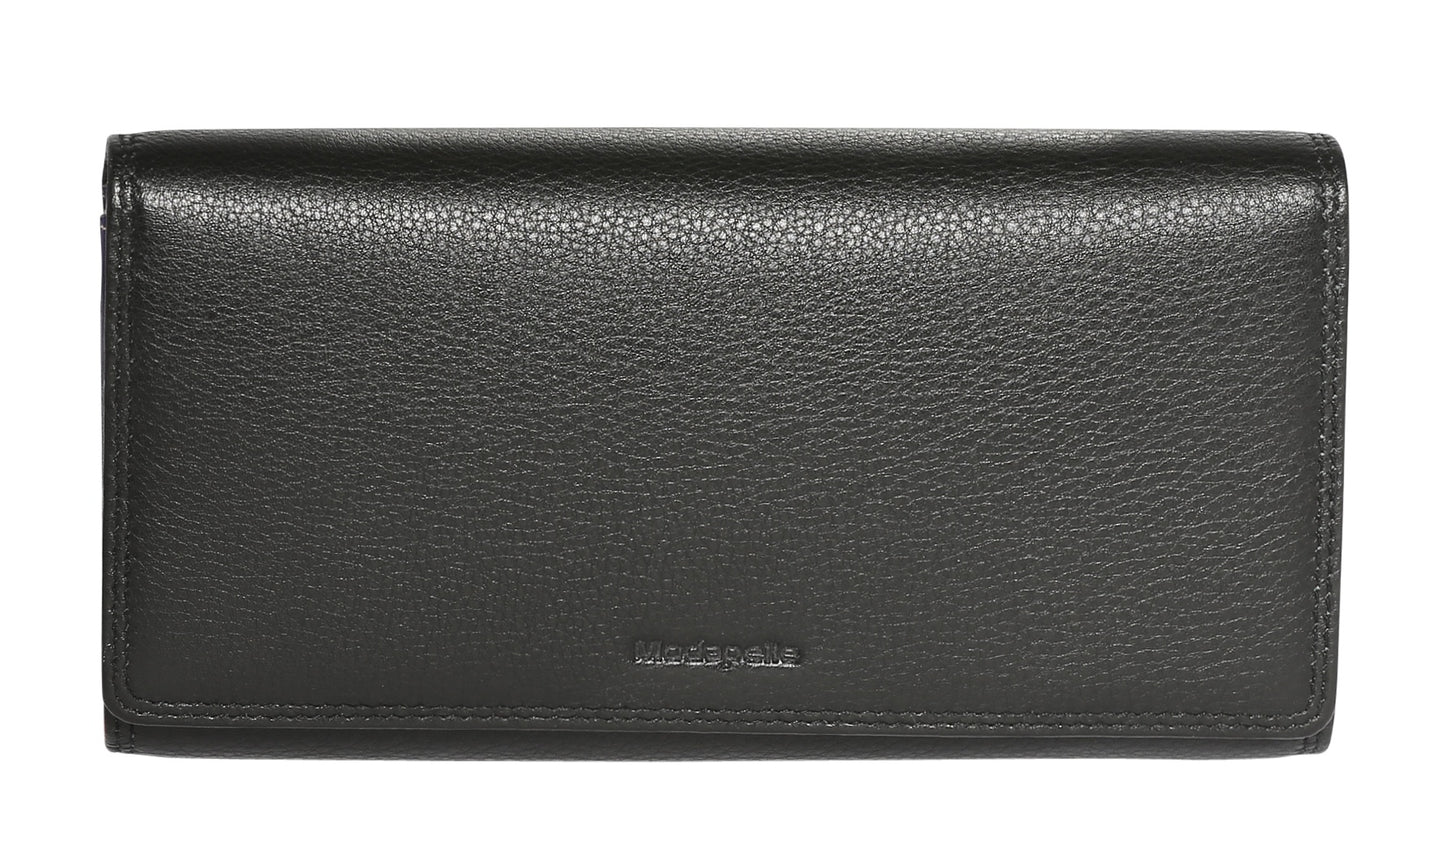 Modapelle - RFID Protected Ladies Full Flat Leather Wallet | MODA7324BLACK